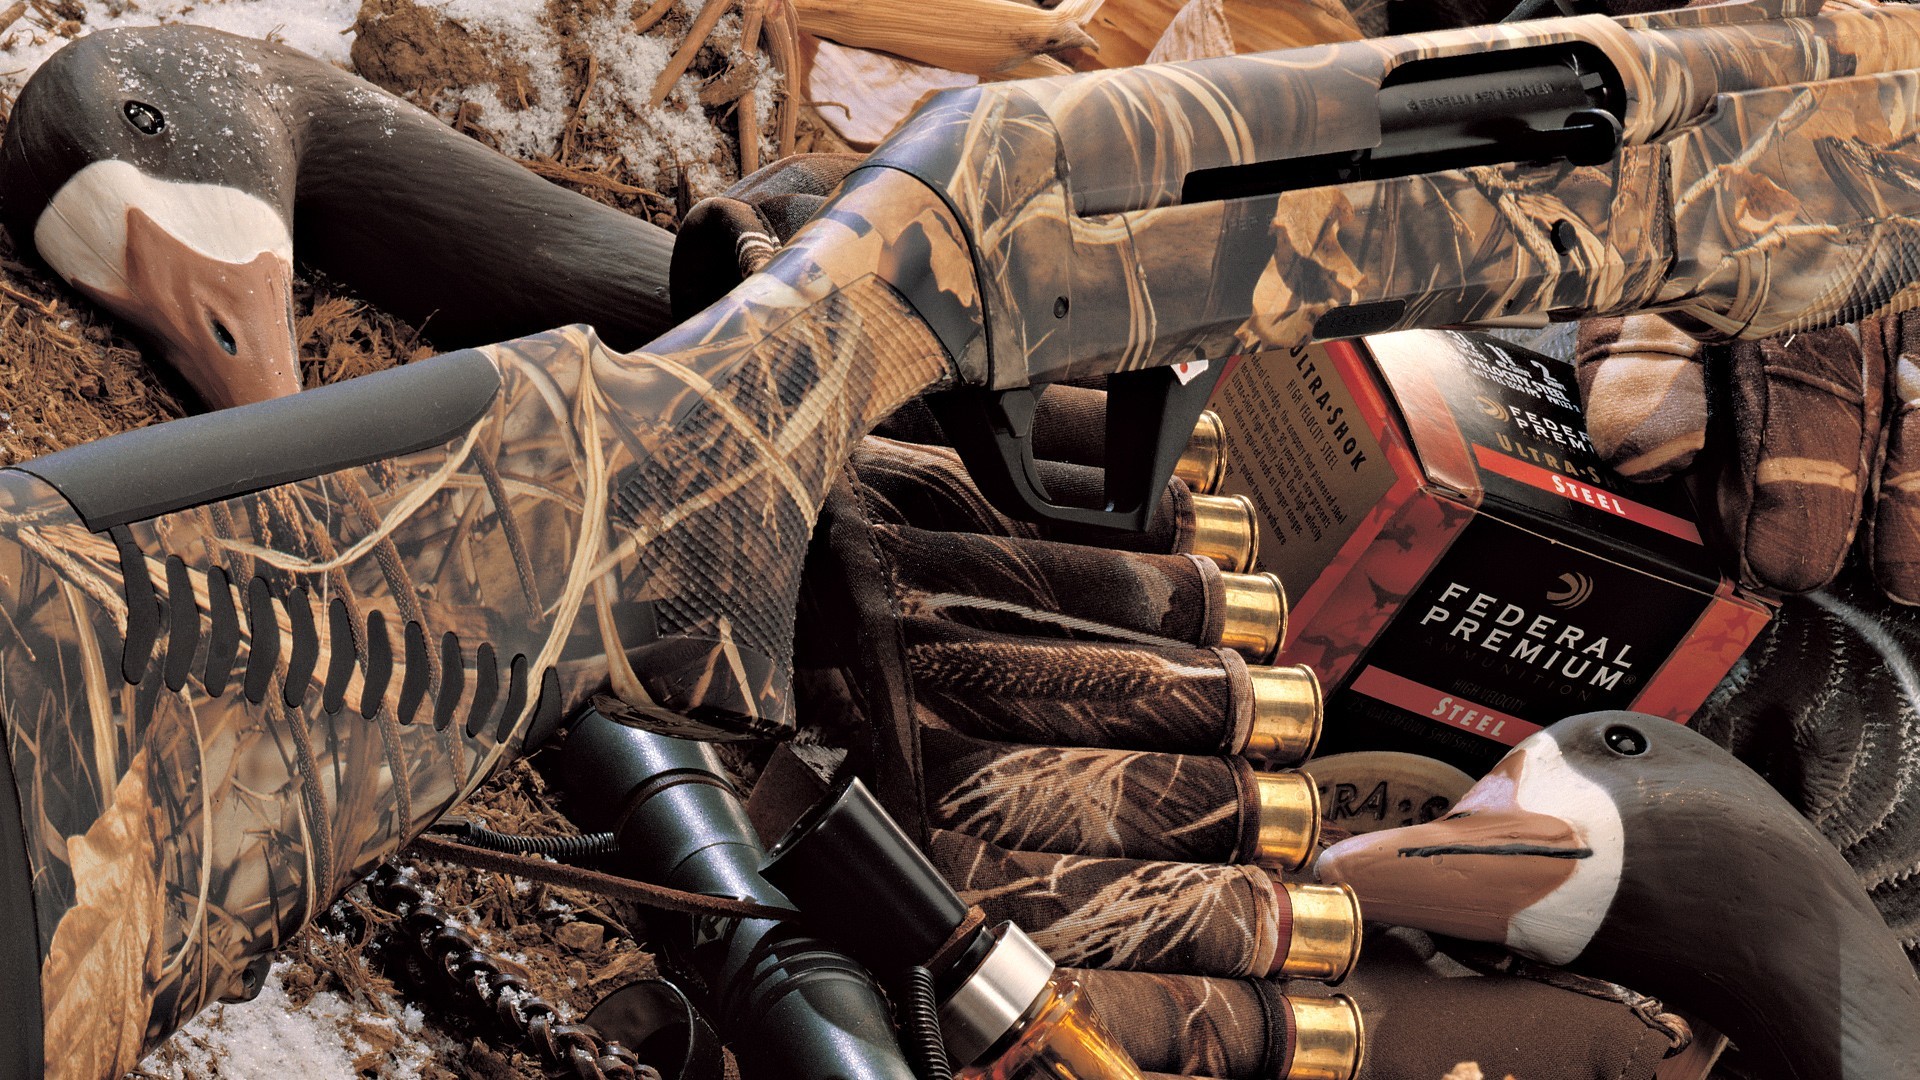 1920x1080 hunting-shotguns-1920Ã1080-wallpaper-wpt8206065